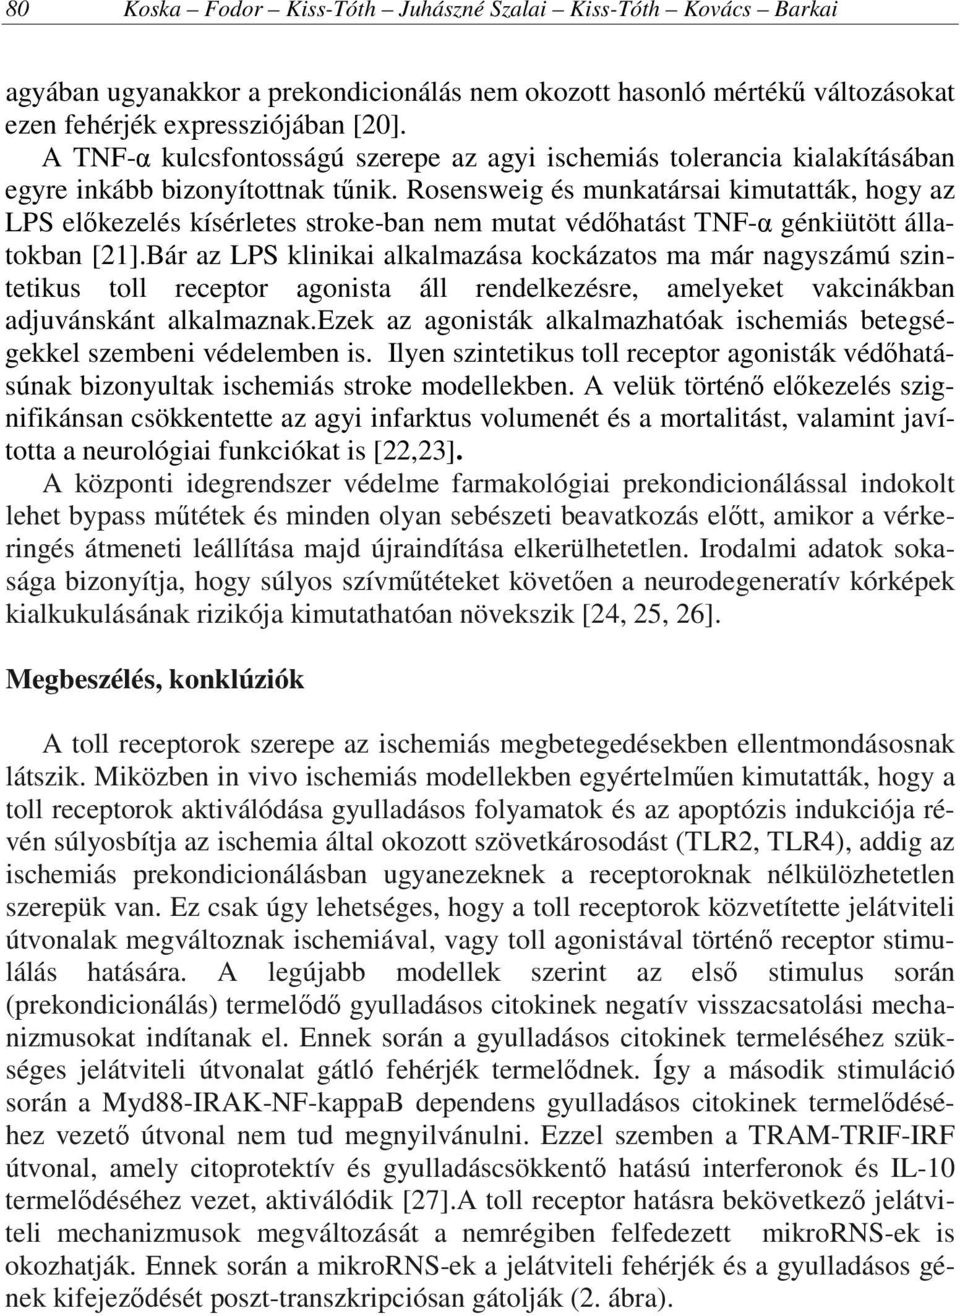 Rosensweig és munkatársai kimutatták, hogy az LPS előkezelés kísérletes stroke-ban nem mutat védőhatást TNF-α génkiütött állatokban [21].